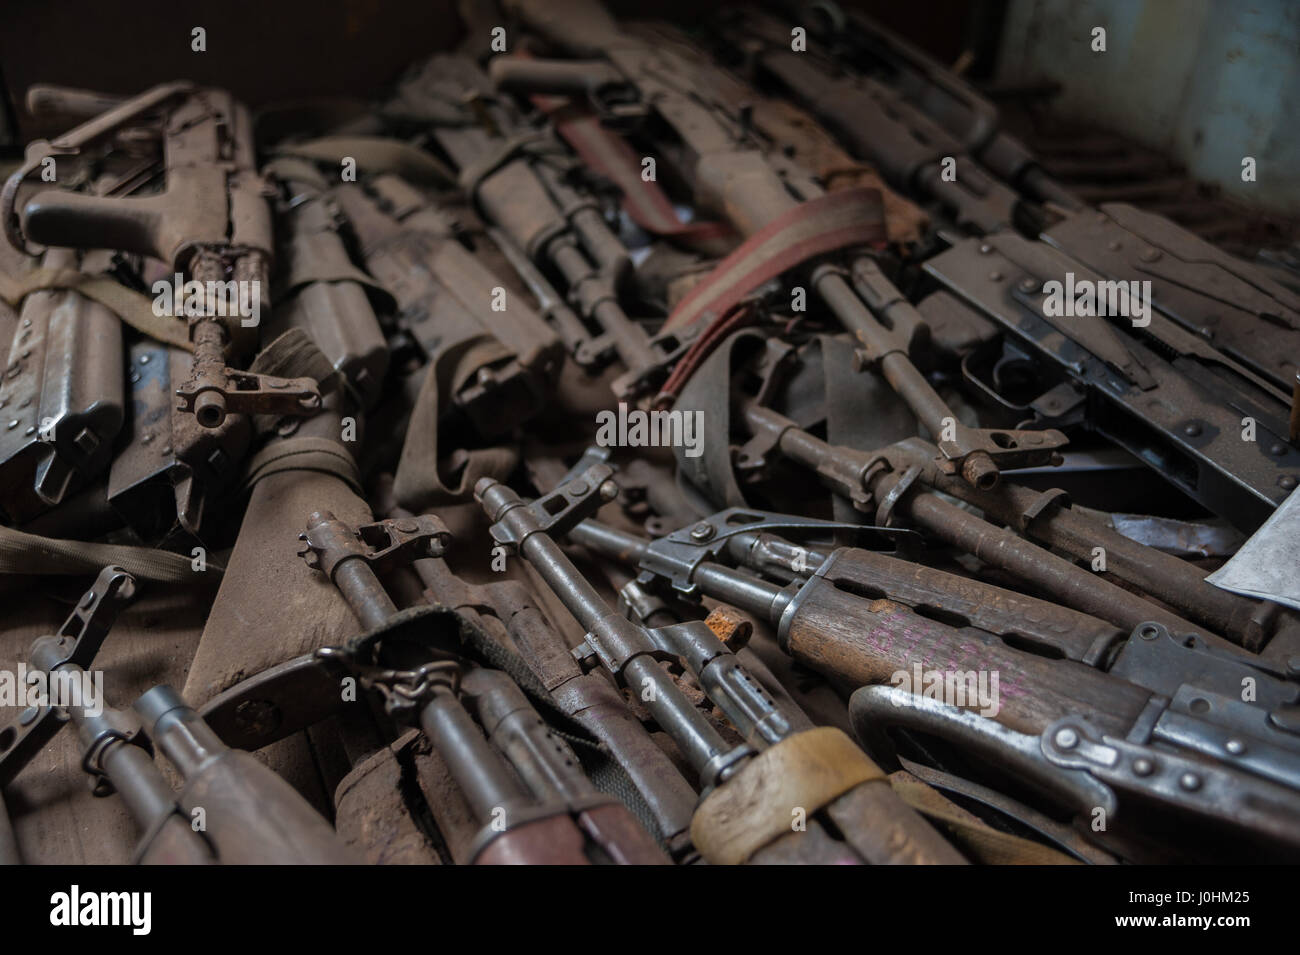 Les armes remises volontairement par des groupes armés en RDC à l'Organisation des Nations Unies à Goma, République démocratique du Congo, avant qu'ils ne soient détruits Banque D'Images